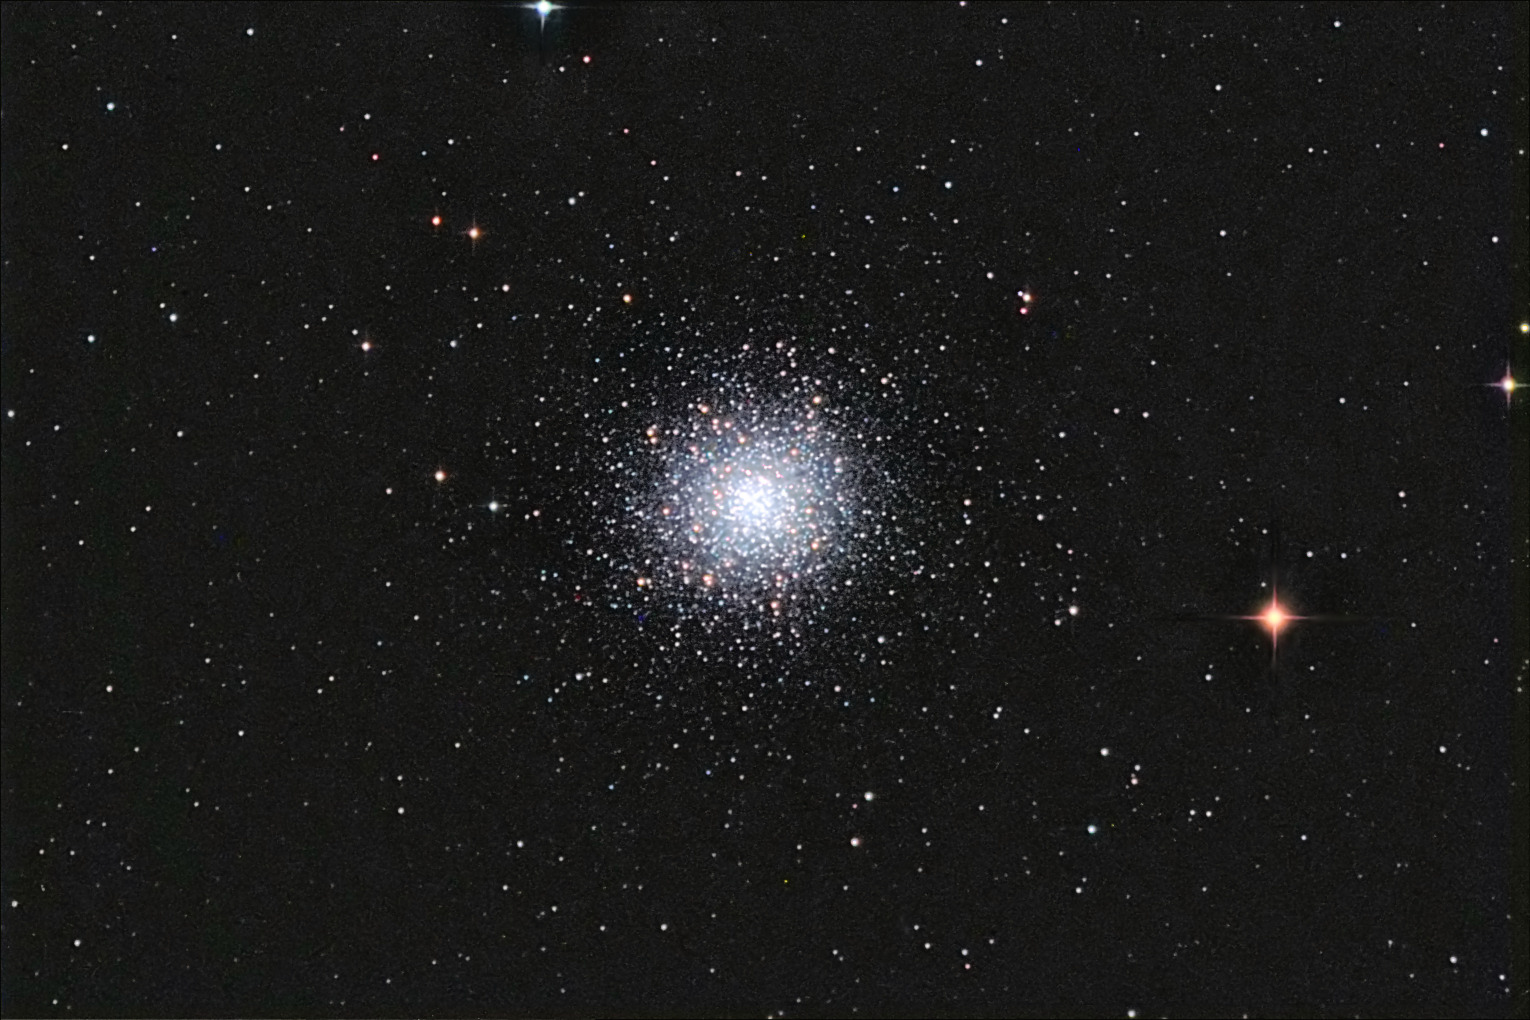 M13 (The Great Globular Cluster in Hercules)